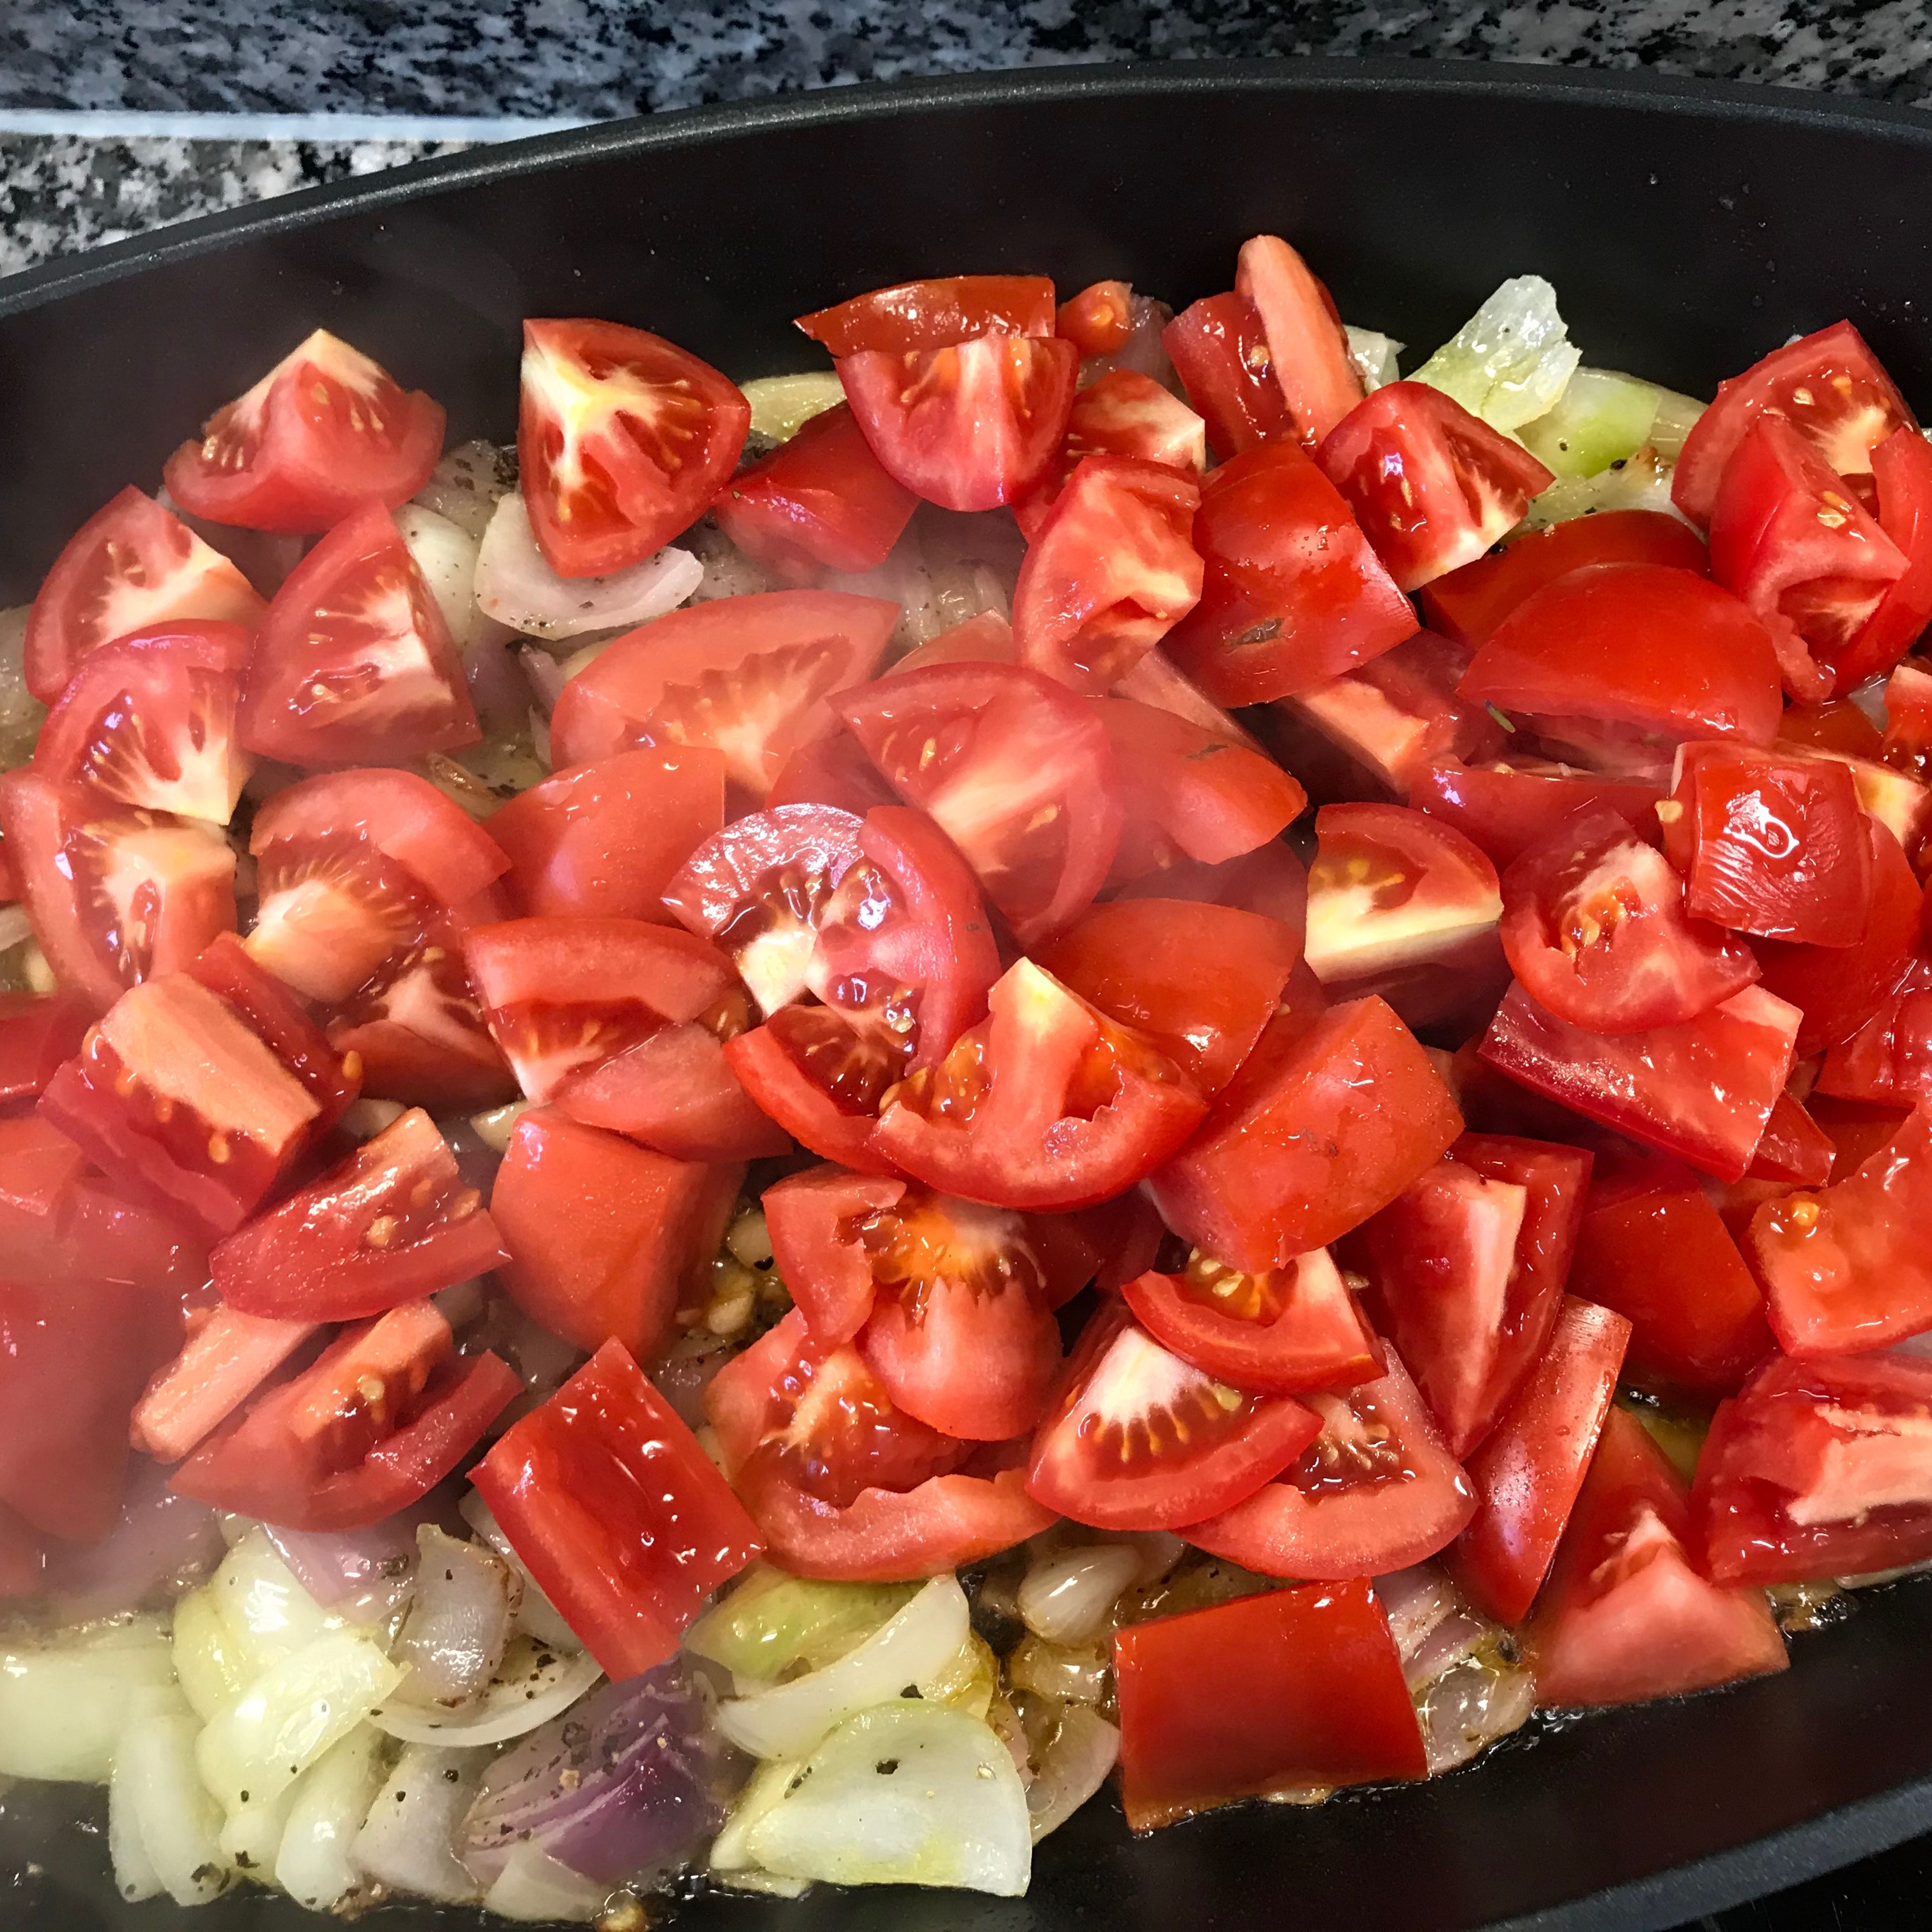 Tomaten zu den Zwiebeln , unterrühren und weiterbraten, etwa 10 minuten . Die Tomaten sollen ihre struktur behalten. Salz und Pfeffer hinzufügen und den geschroteten Chili. Eine Prise bis ein Teelöffel, je nach Belieben .